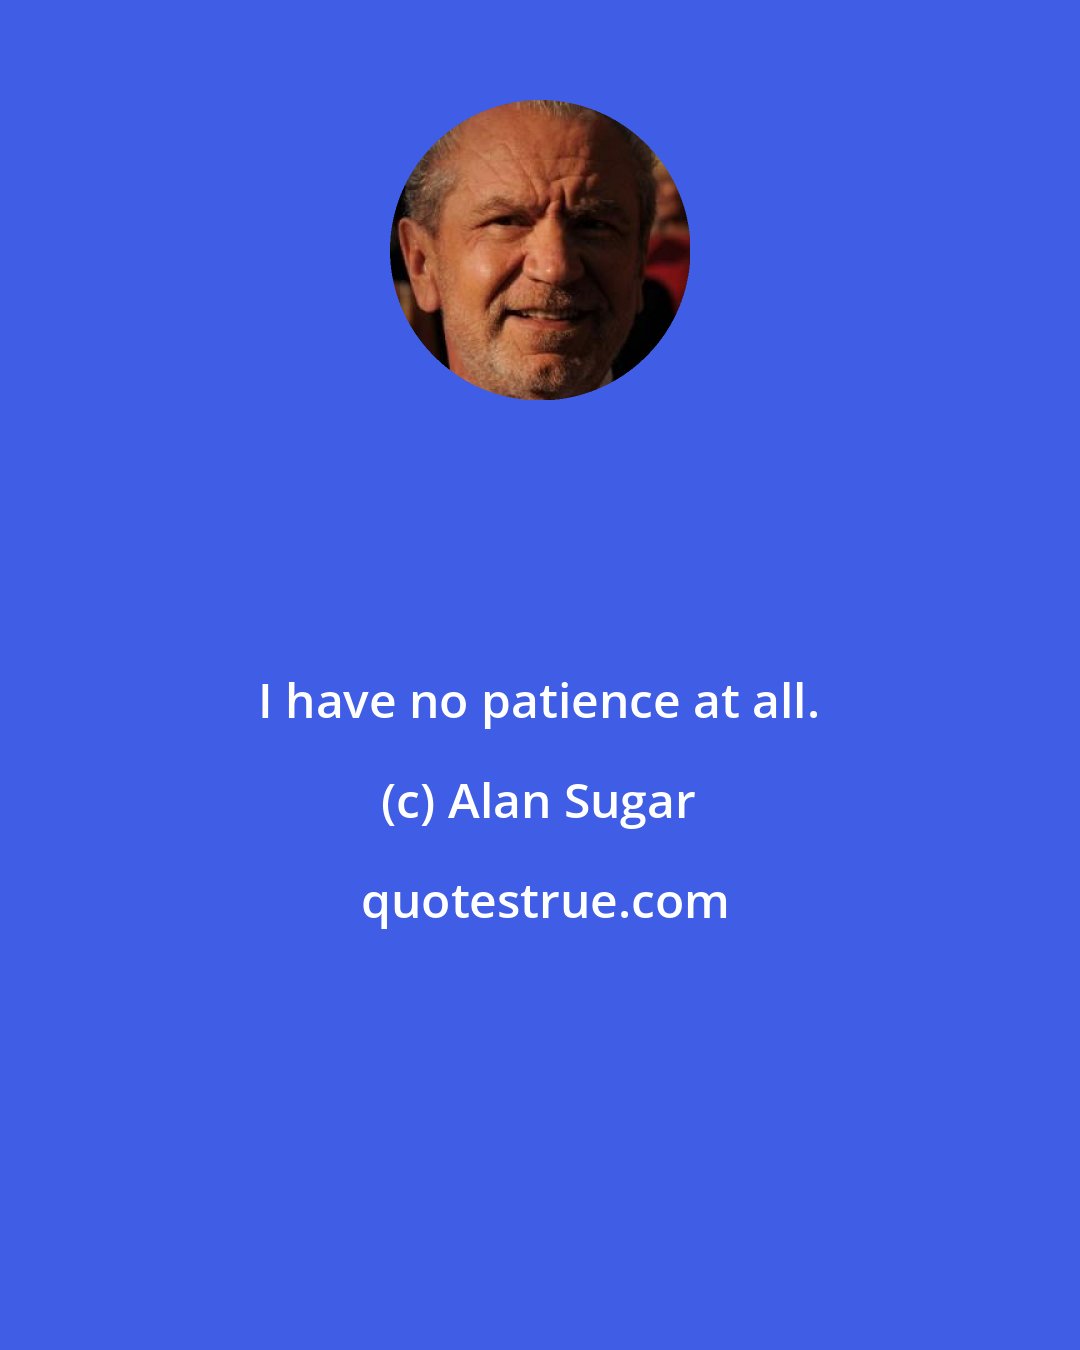 Alan Sugar: I have no patience at all.